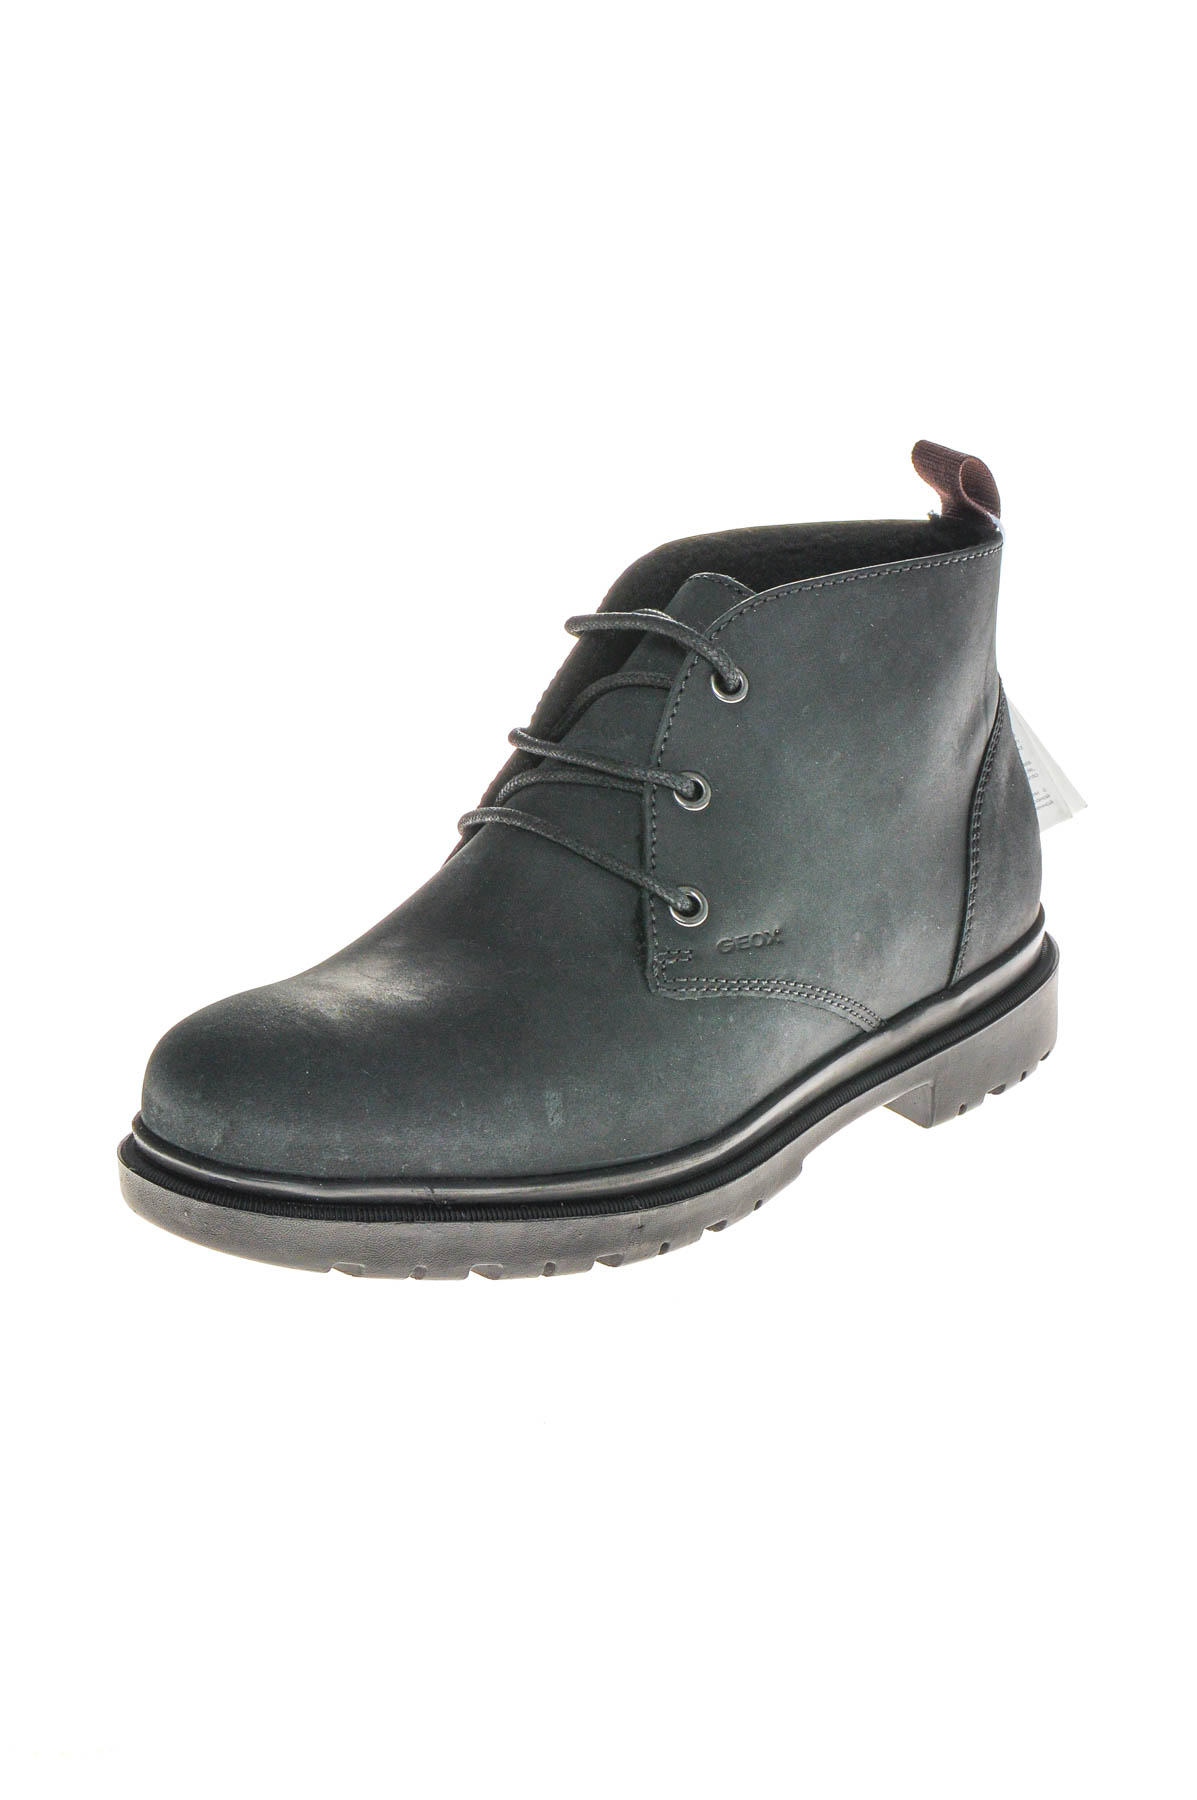 Men's boots - GEOX - 1